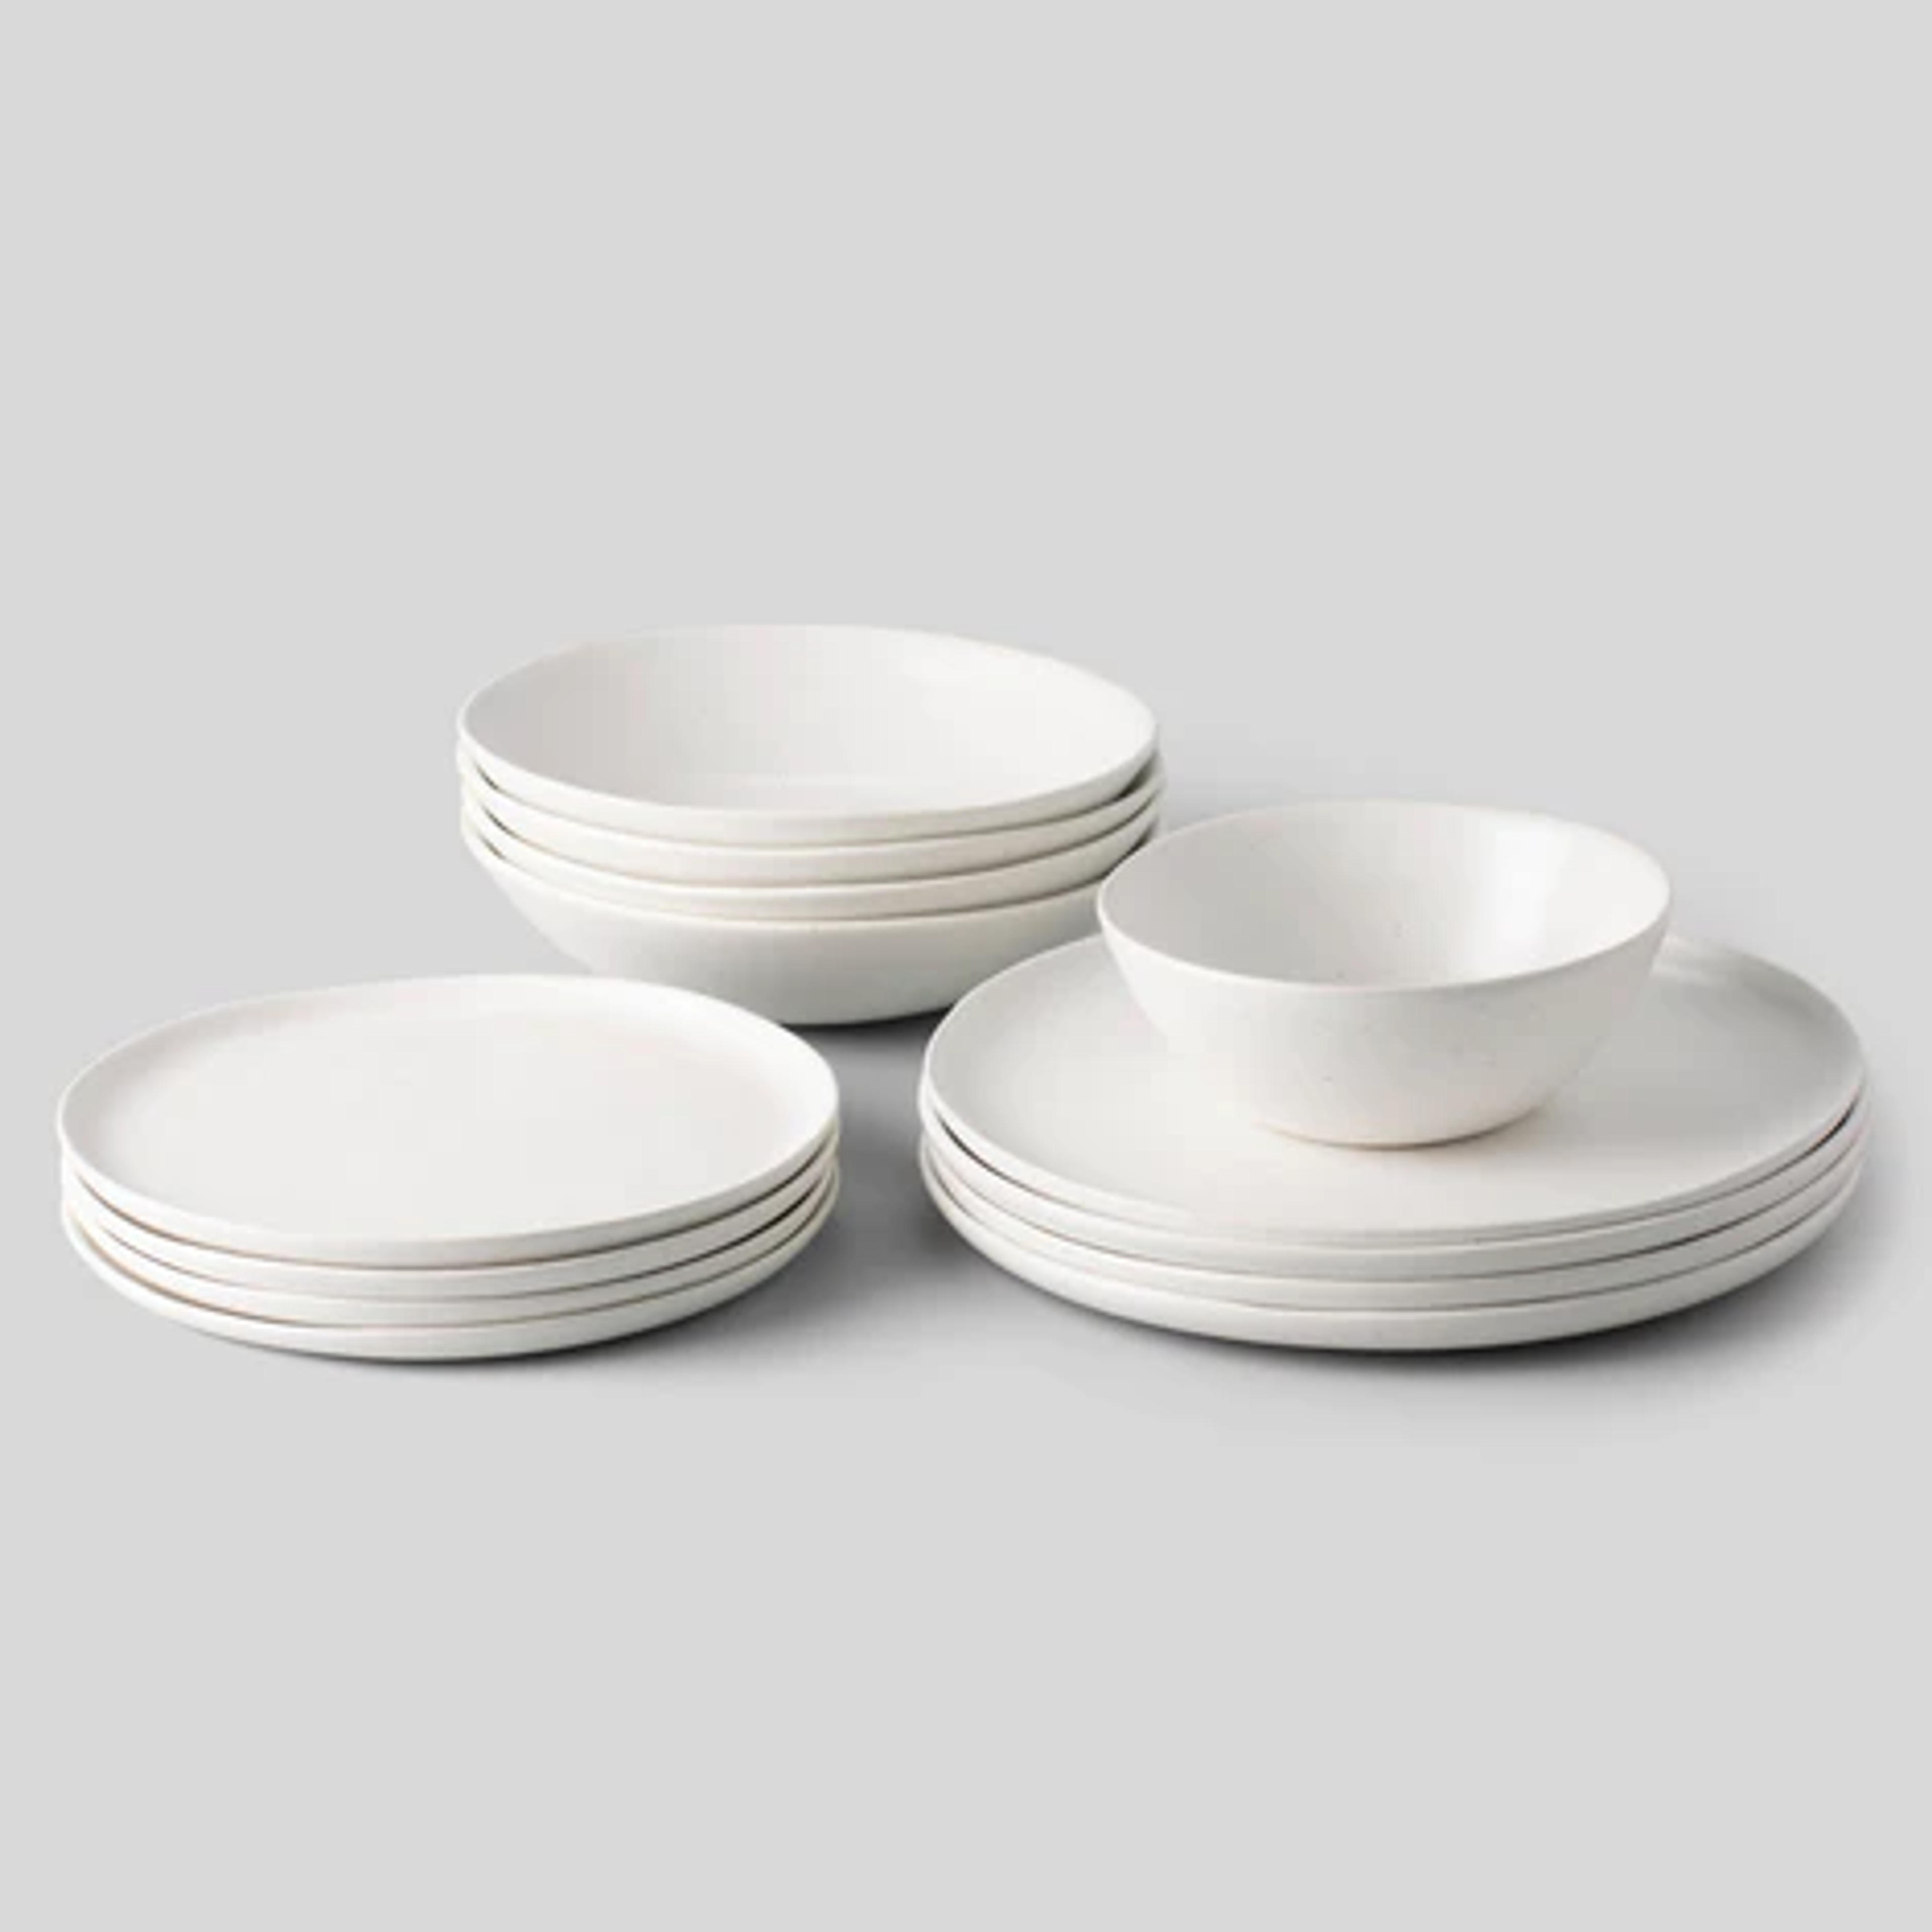 Ceramic Dinnerware Sets | Ceramic Tableware | Fable Home